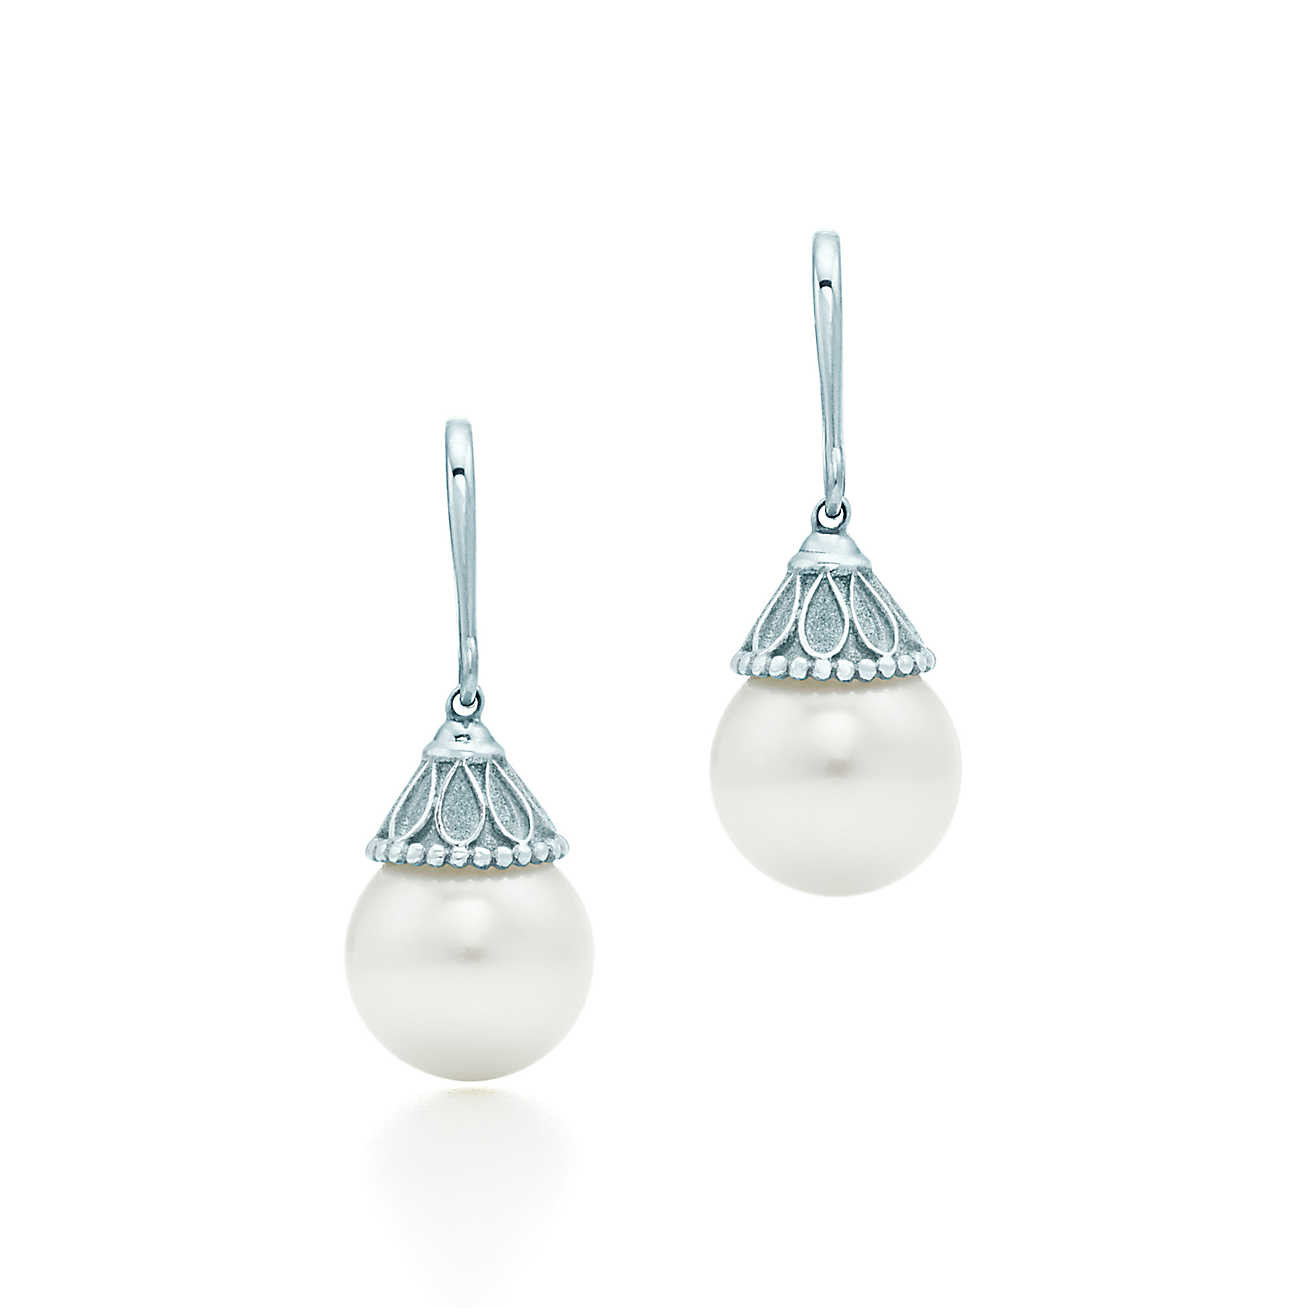 Tiffany Pearl Earrings
 Ziegfeld Collection pearl earrings in sterling silver